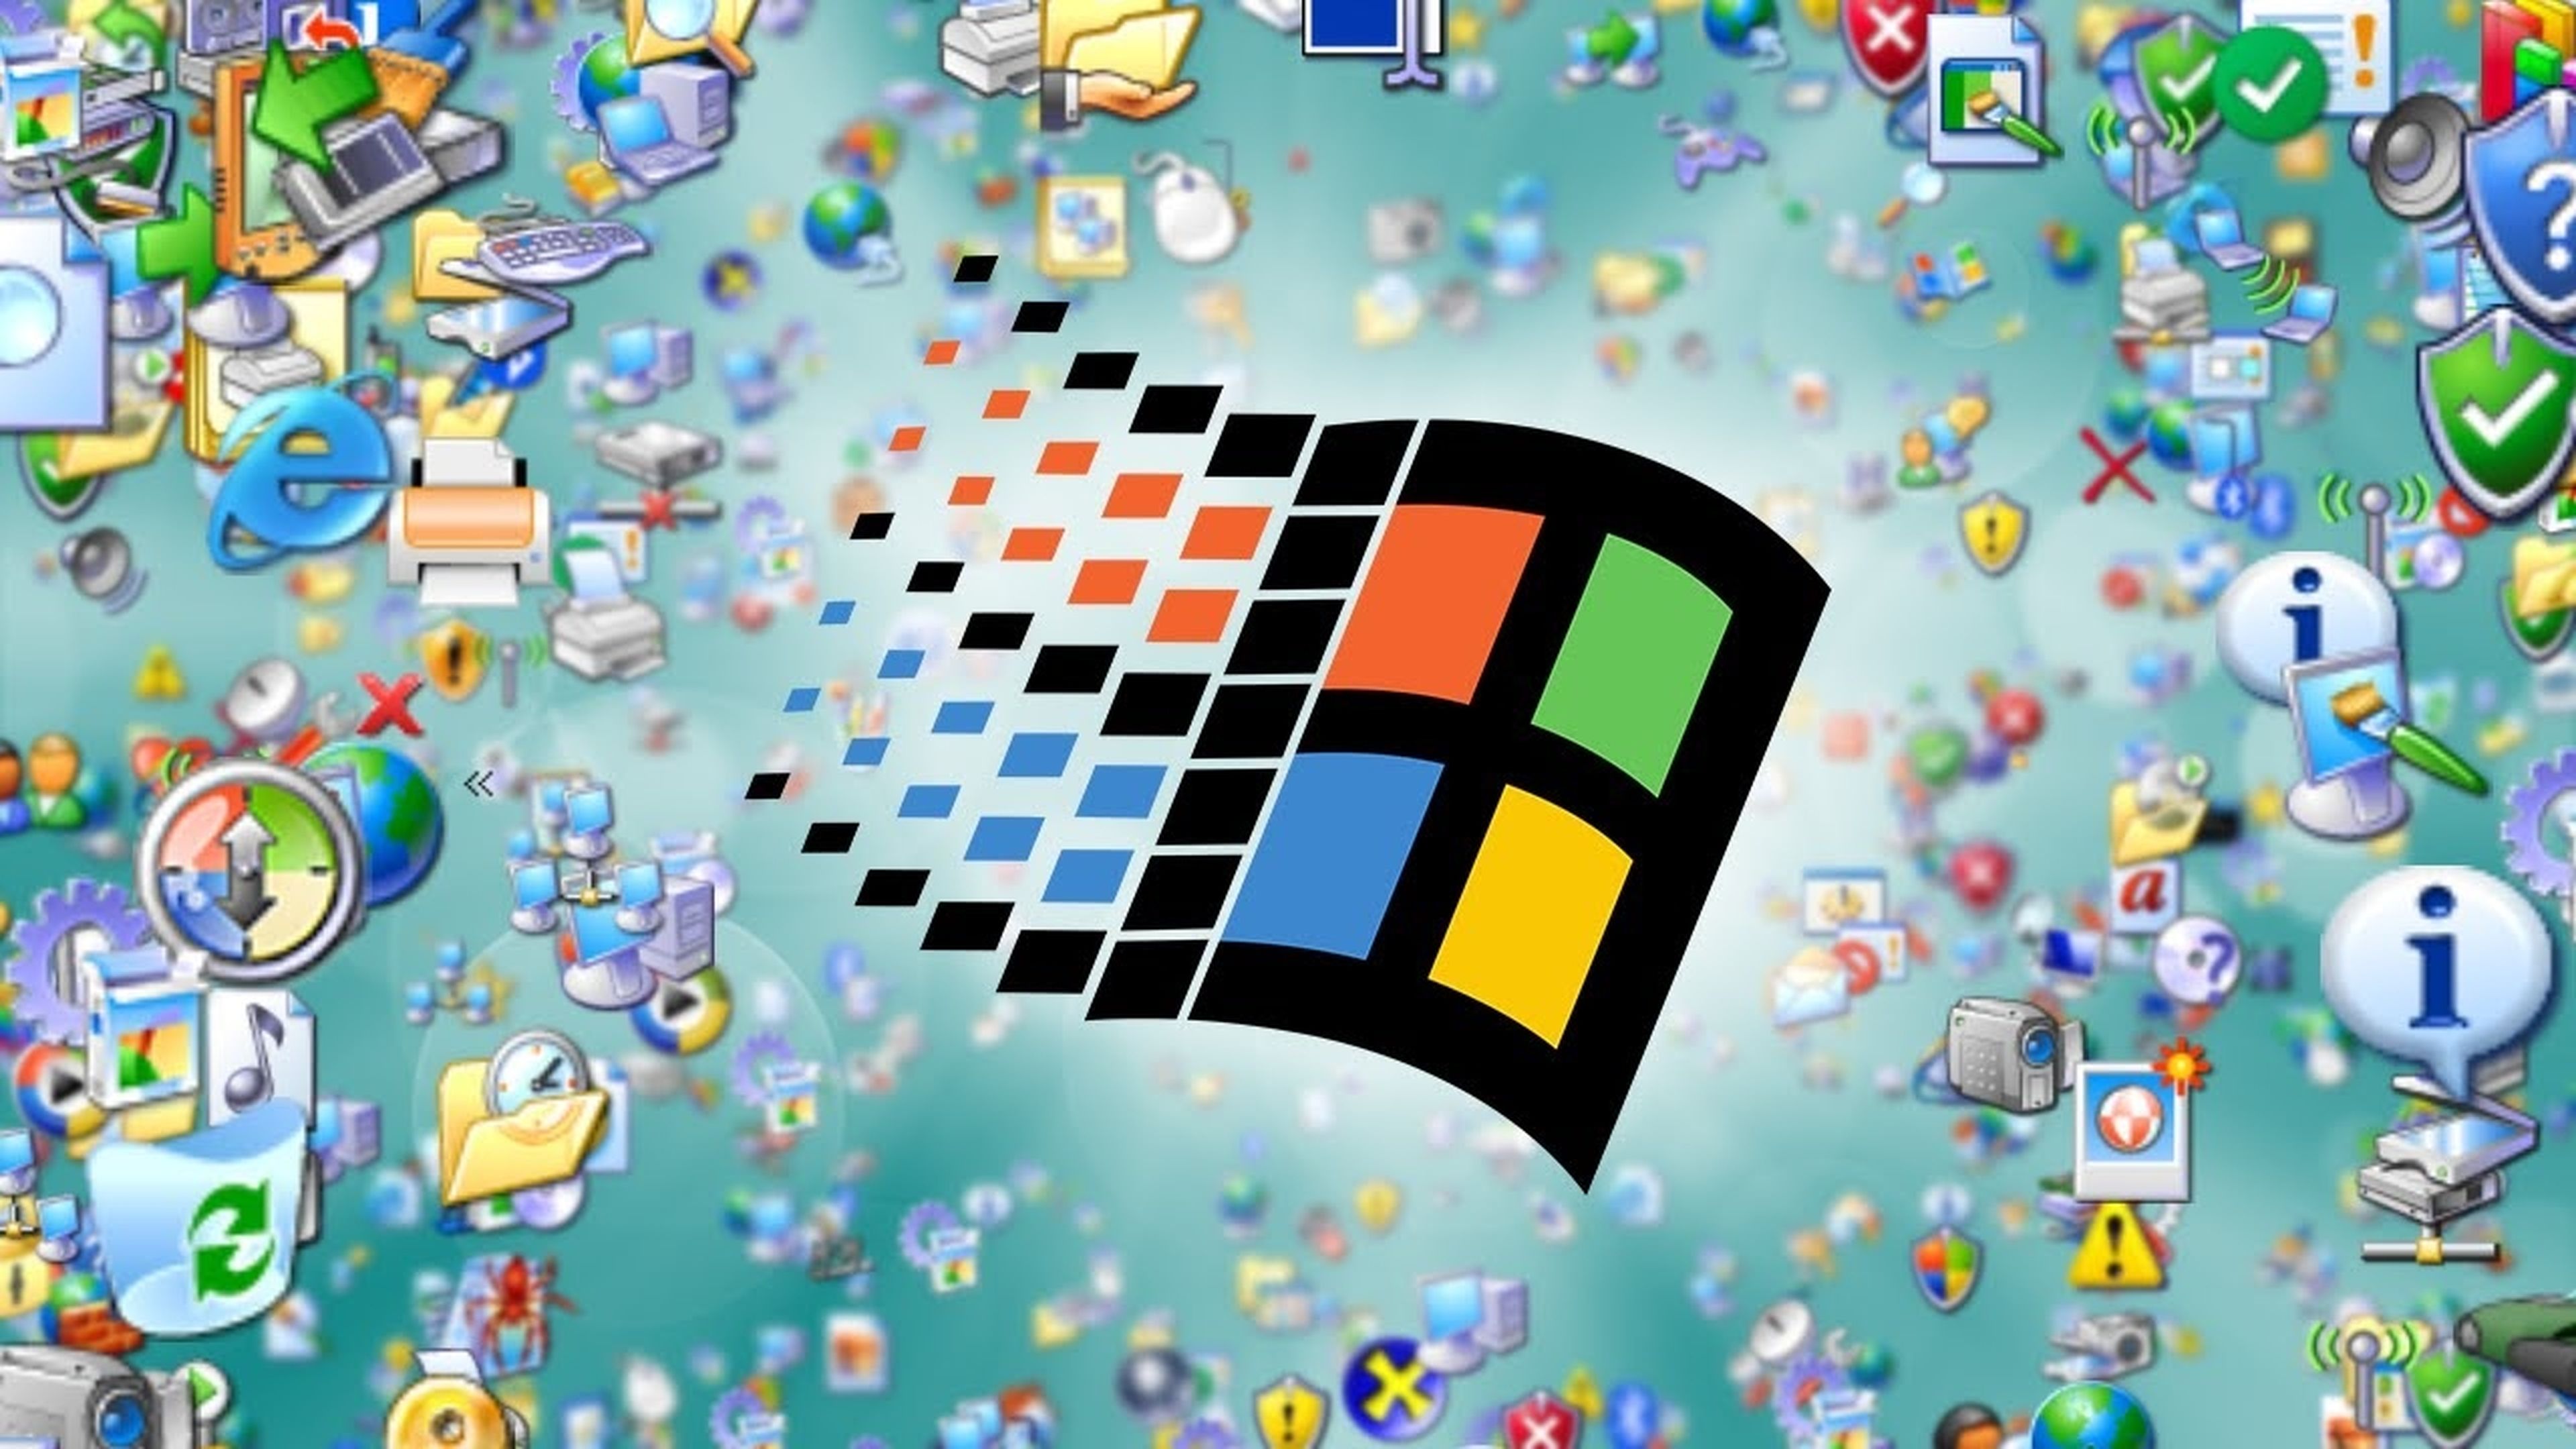 25 años después, portean miles de juegos y aplicaciones modernas a Windows 95